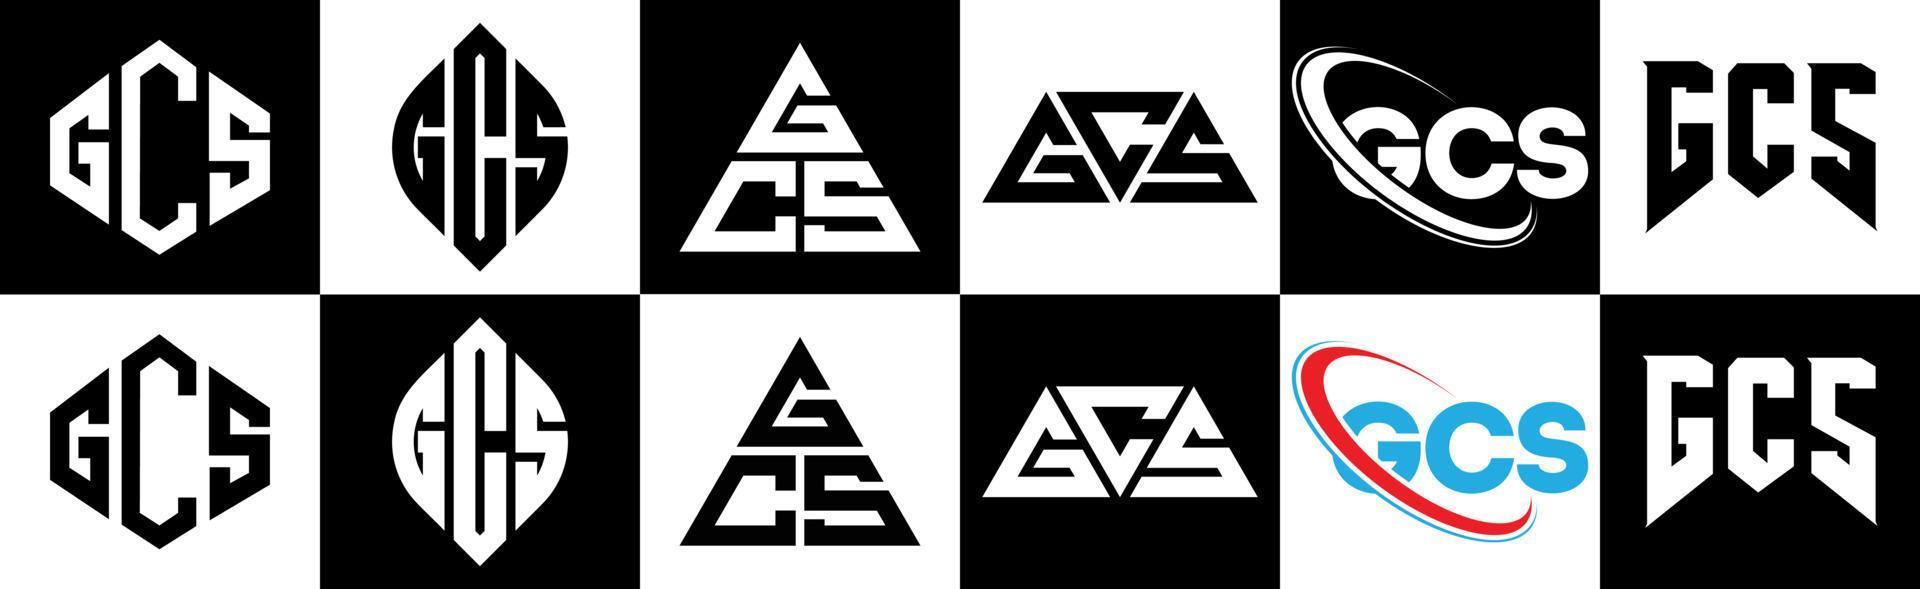 Diseño de logotipo de letra gcs en seis estilos. gcs polígono, círculo, triángulo, hexágono, estilo plano y simple con logotipo de letra de variación de color blanco y negro en una mesa de trabajo. logotipo minimalista y clásico de gcs vector